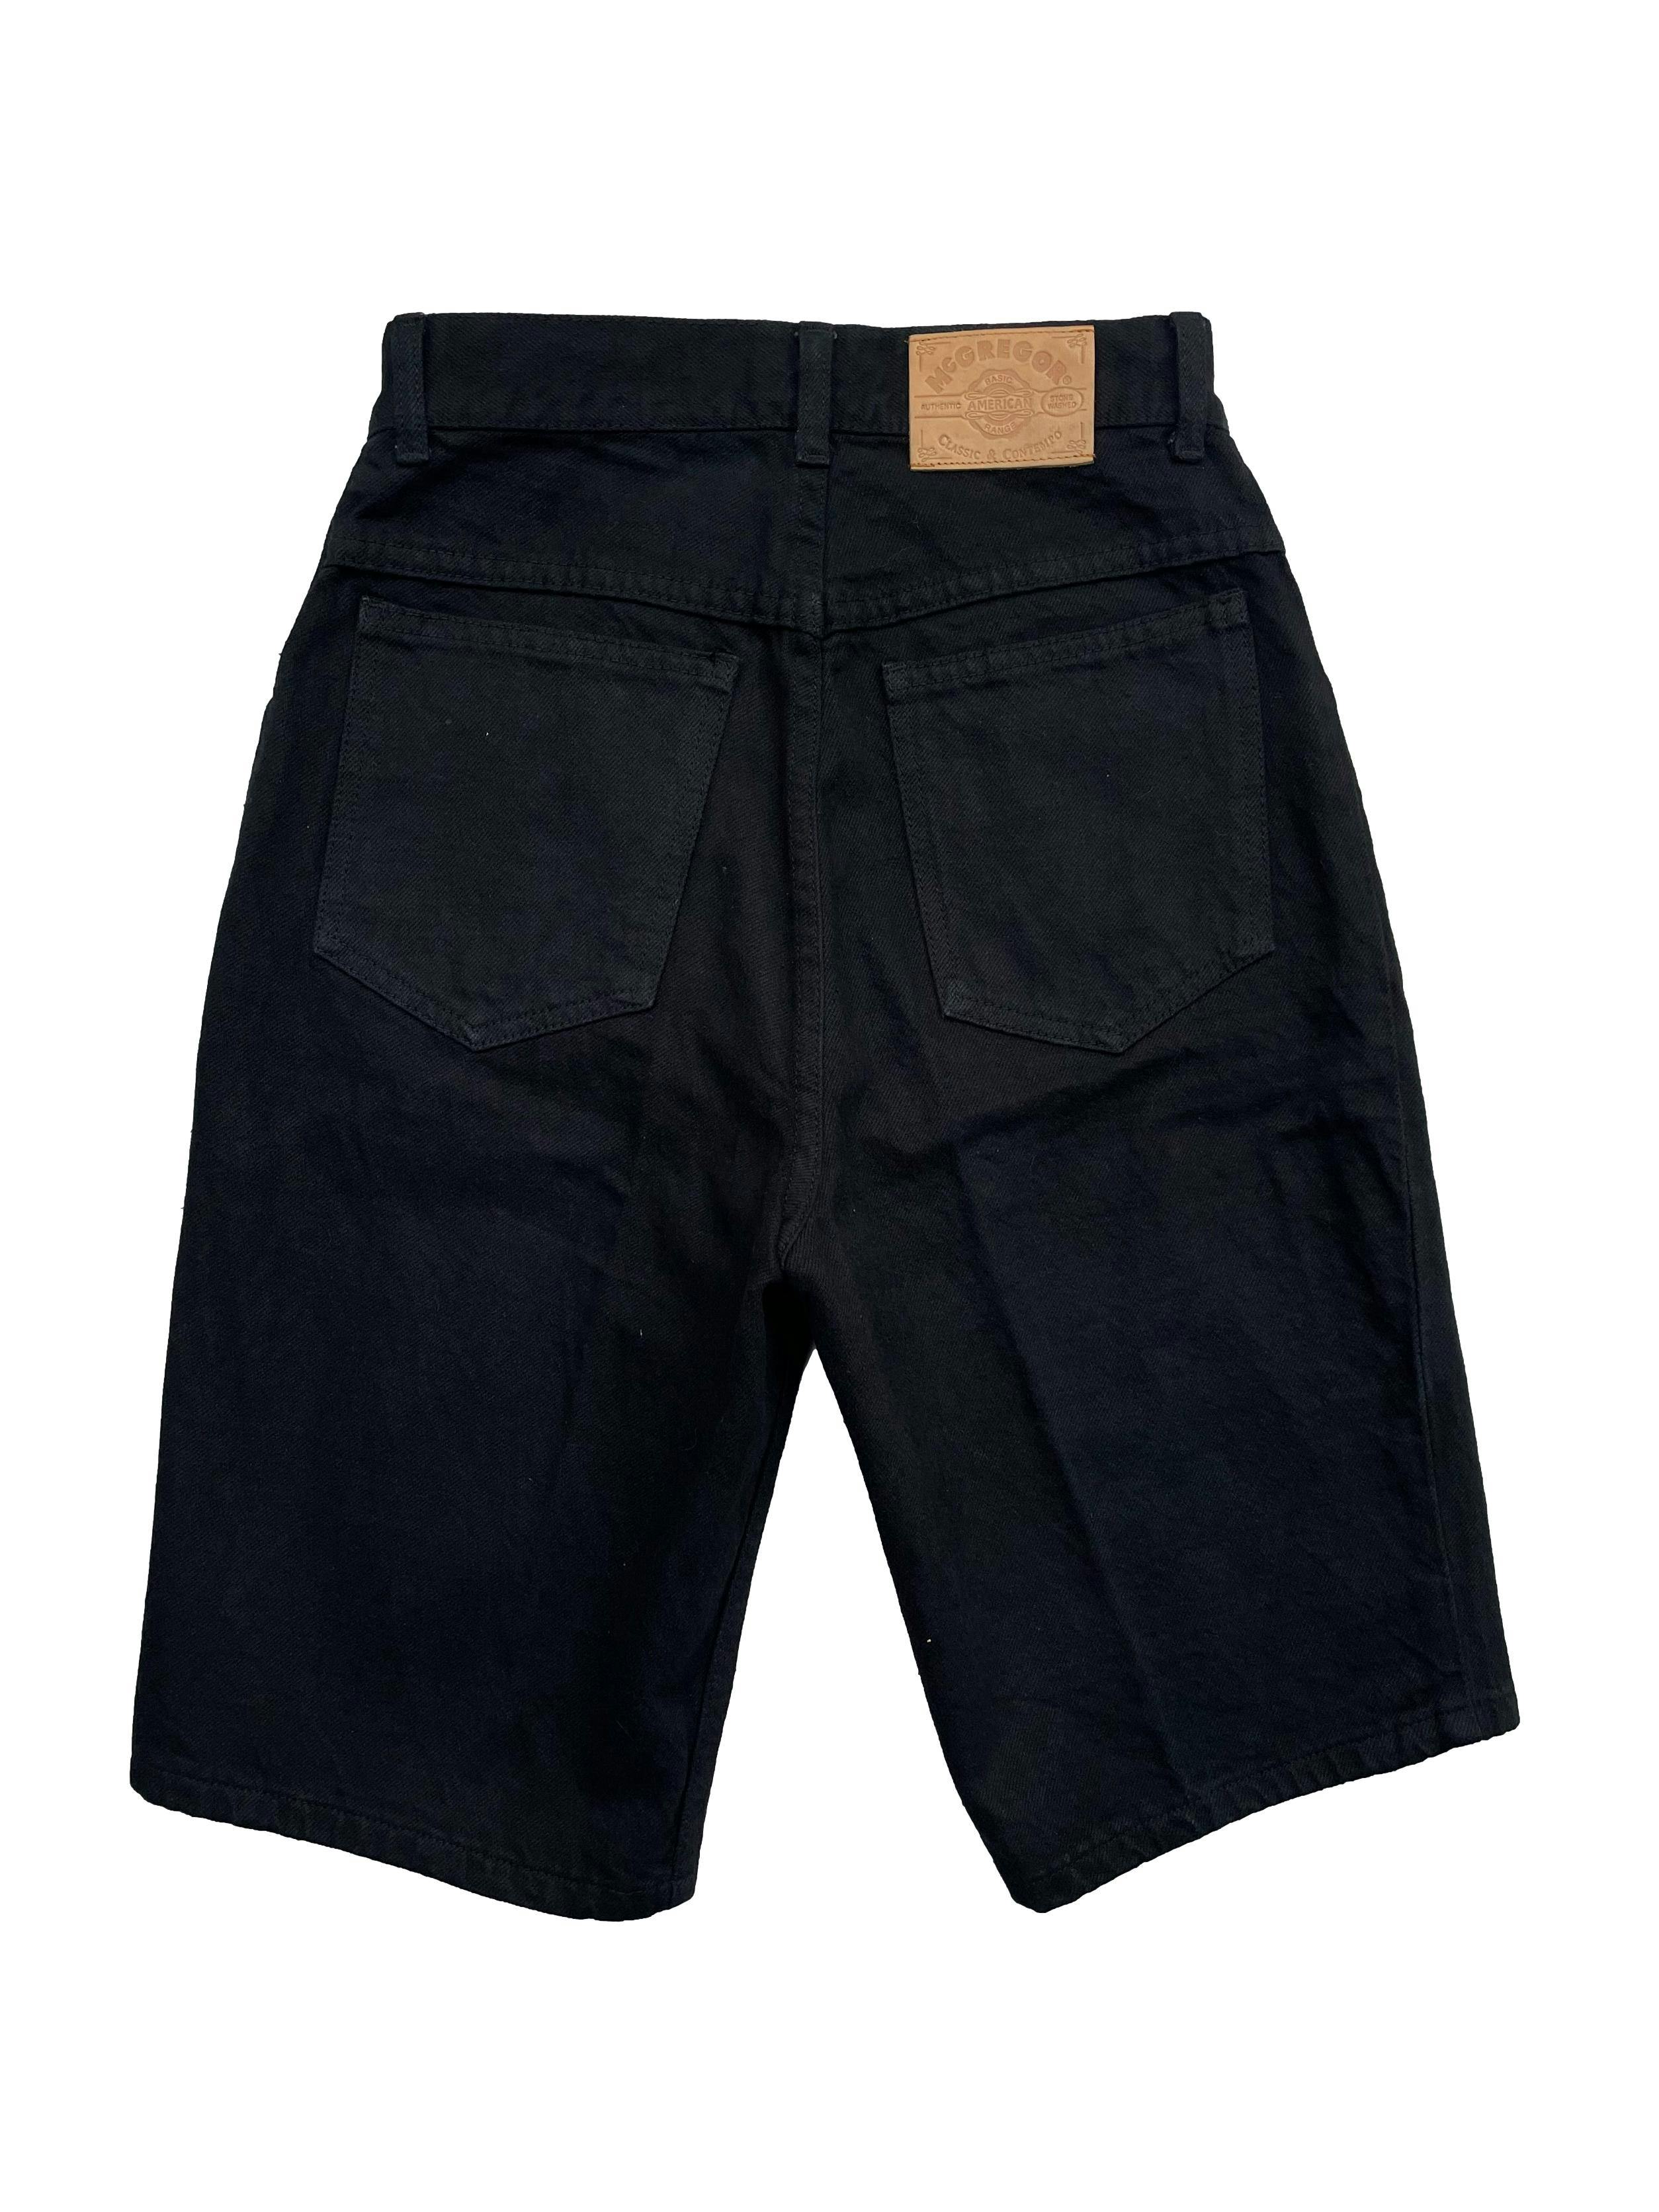 Short vintage negro de jean 100% algodón, bolsillos delanteros y posteriores. Cintura 68cm, Largo 58cm. 